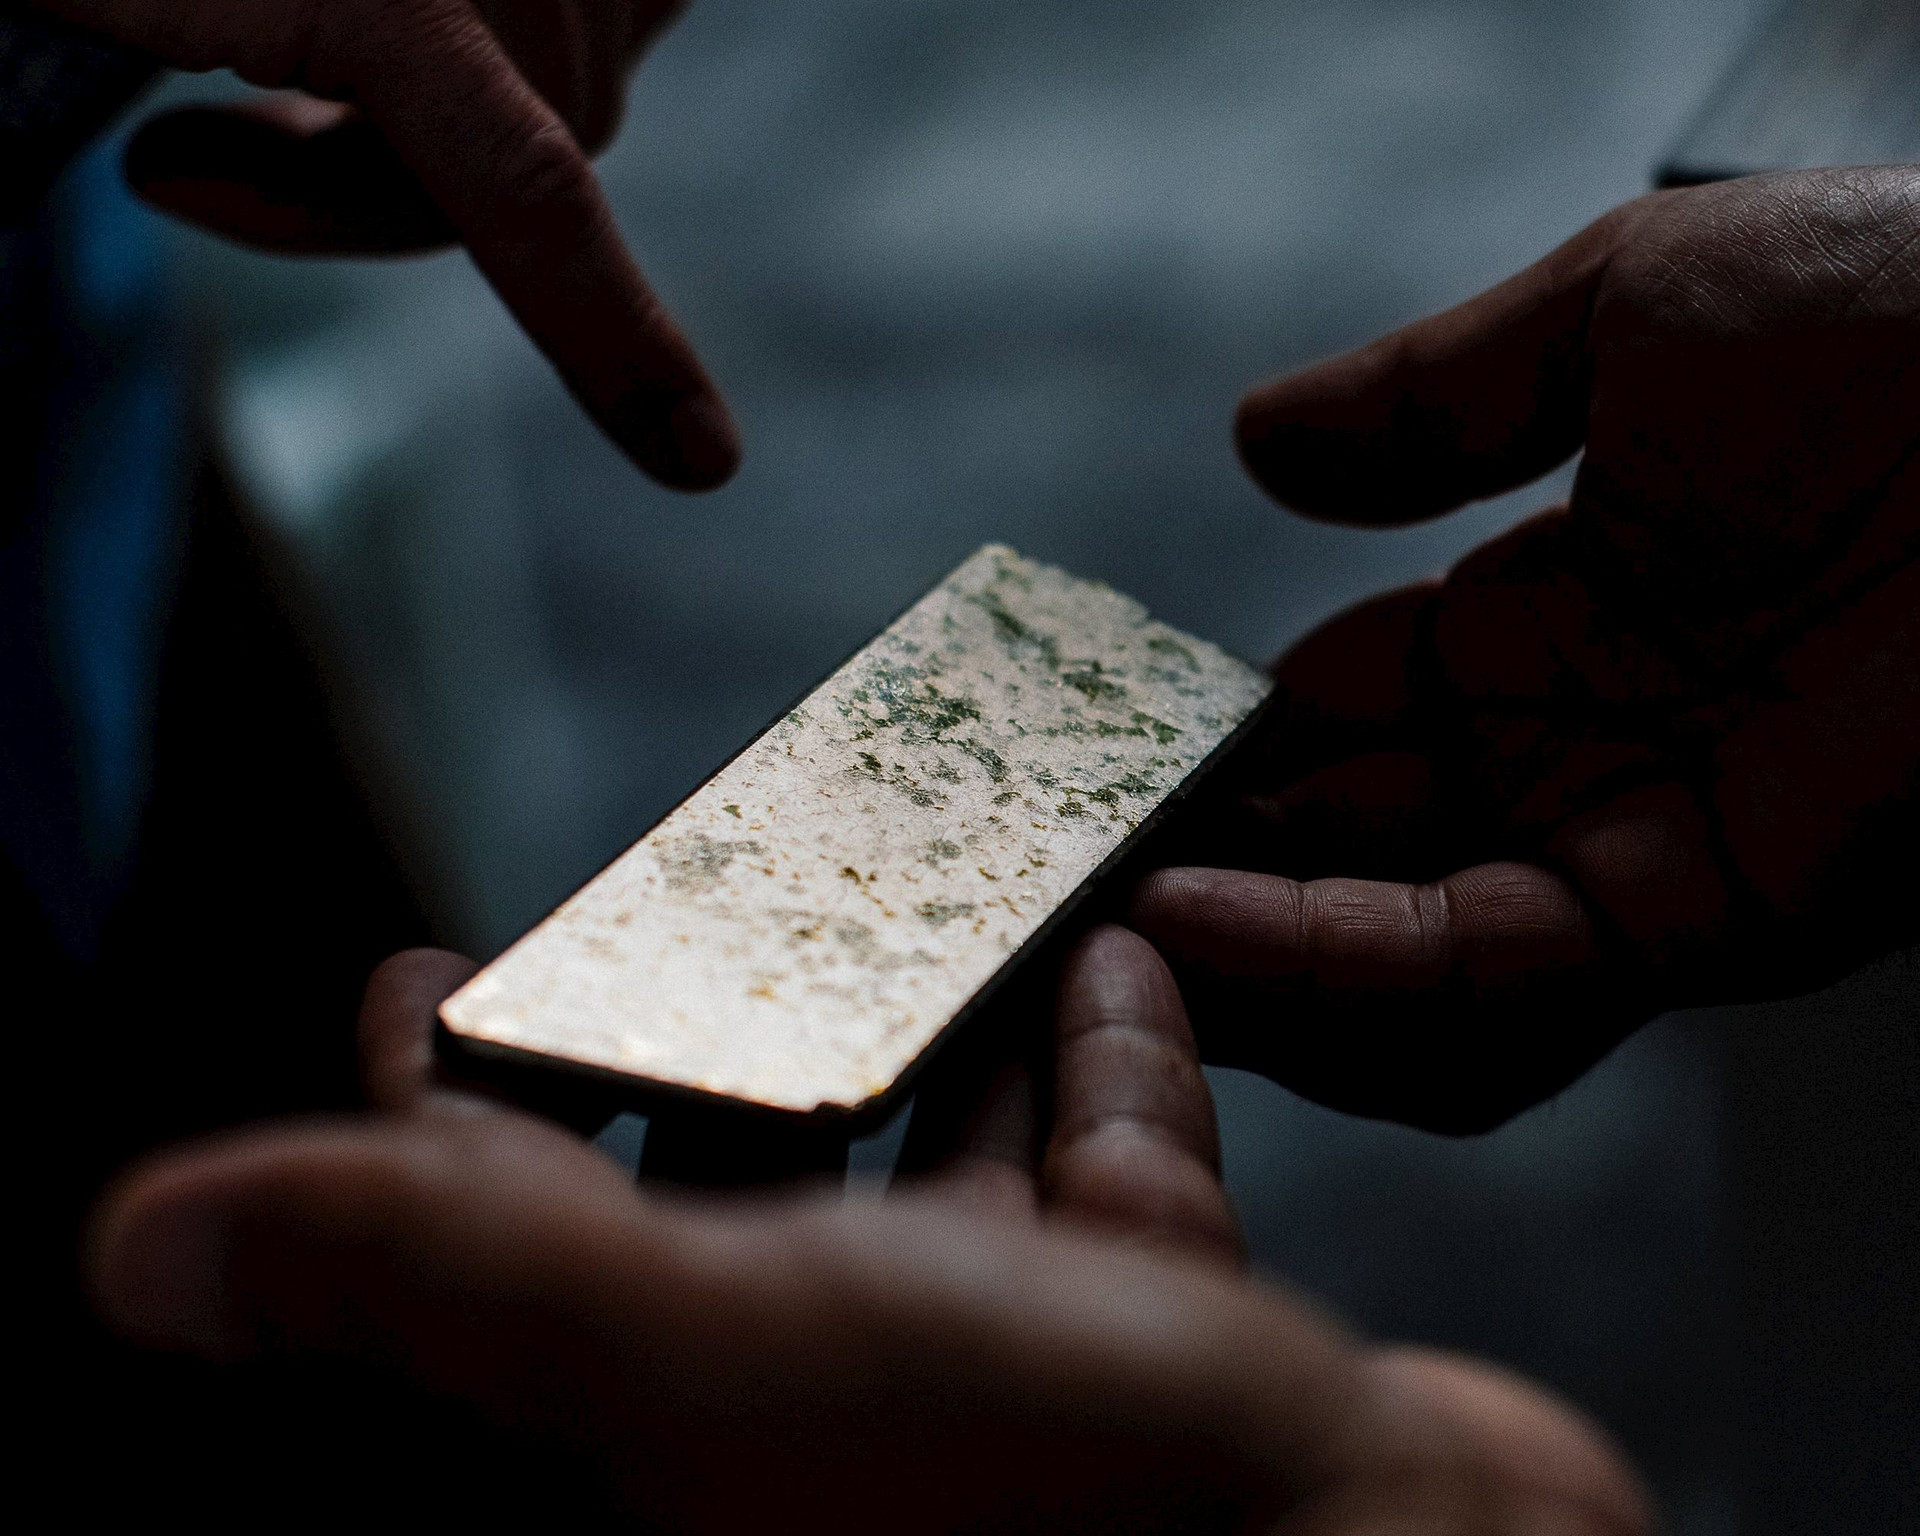 Quốc gia tìm ra mỏ kho báu 'quý hơn vàng': Trị giá hàng chục tỷ USD, chứa khoảng 20 triệu tấn quặng kim loại quý nhưng chưa từng bị khai thác - Ảnh 2.